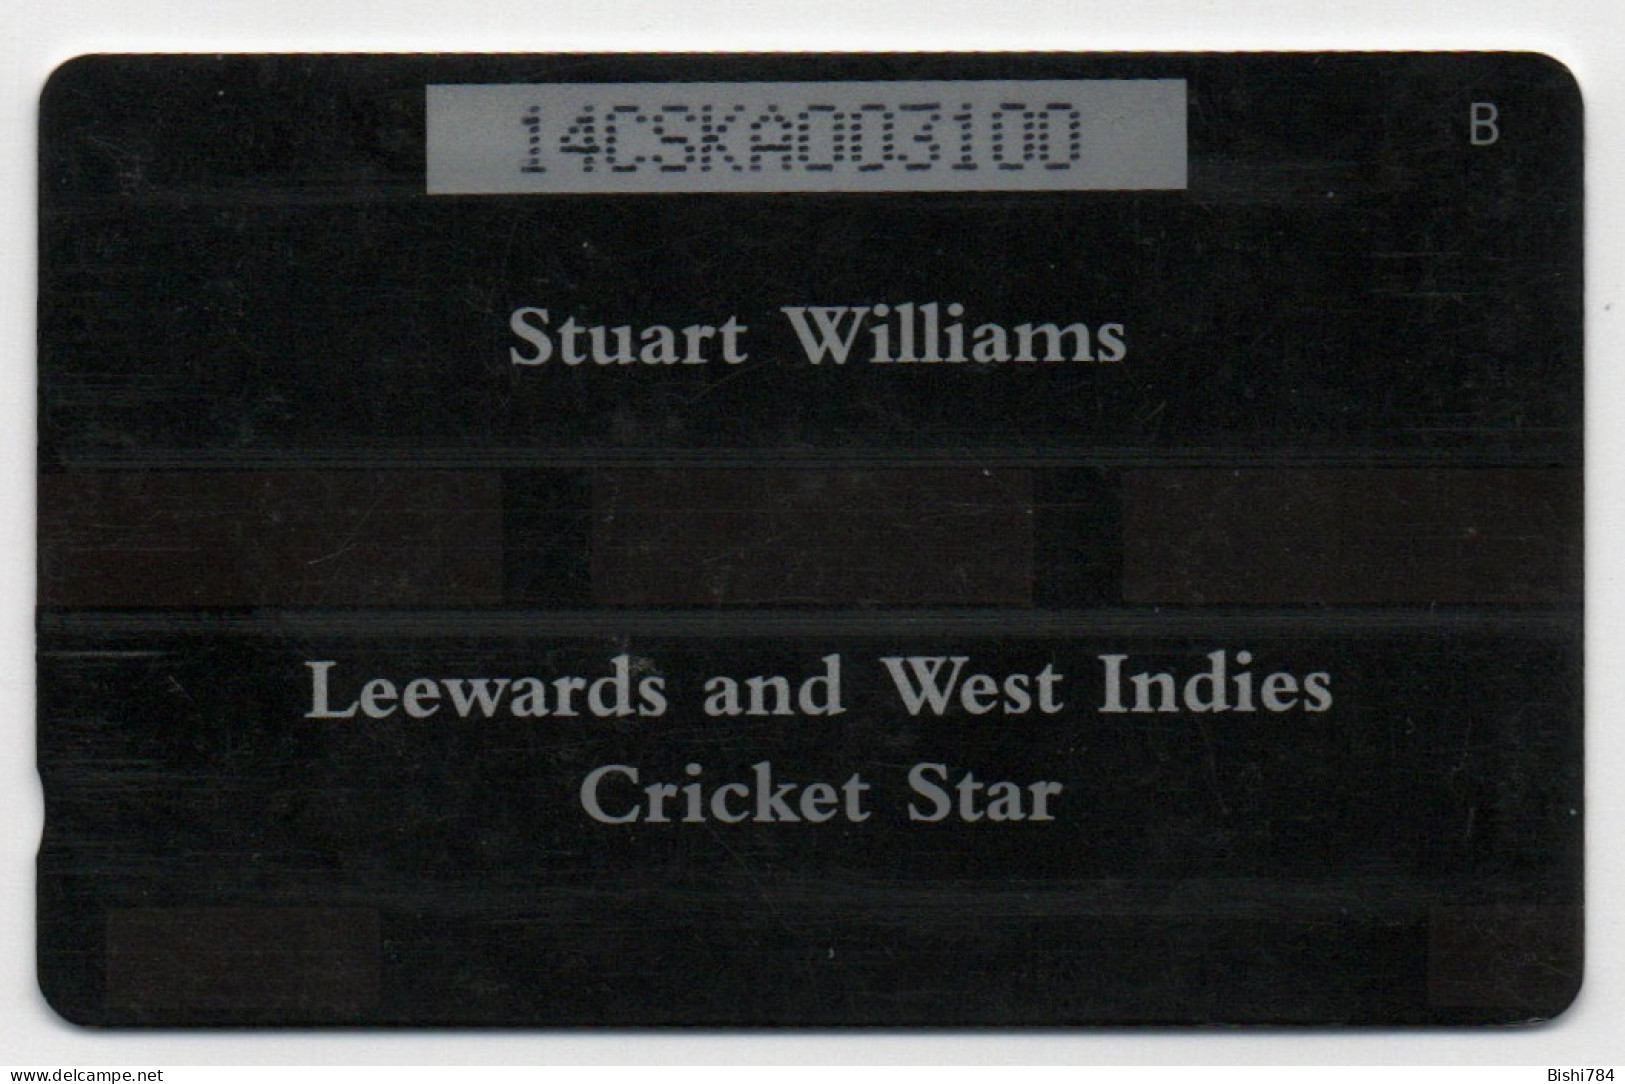 St. Kitts & Nevis - Stuart Williams - 14CSKA - Saint Kitts & Nevis